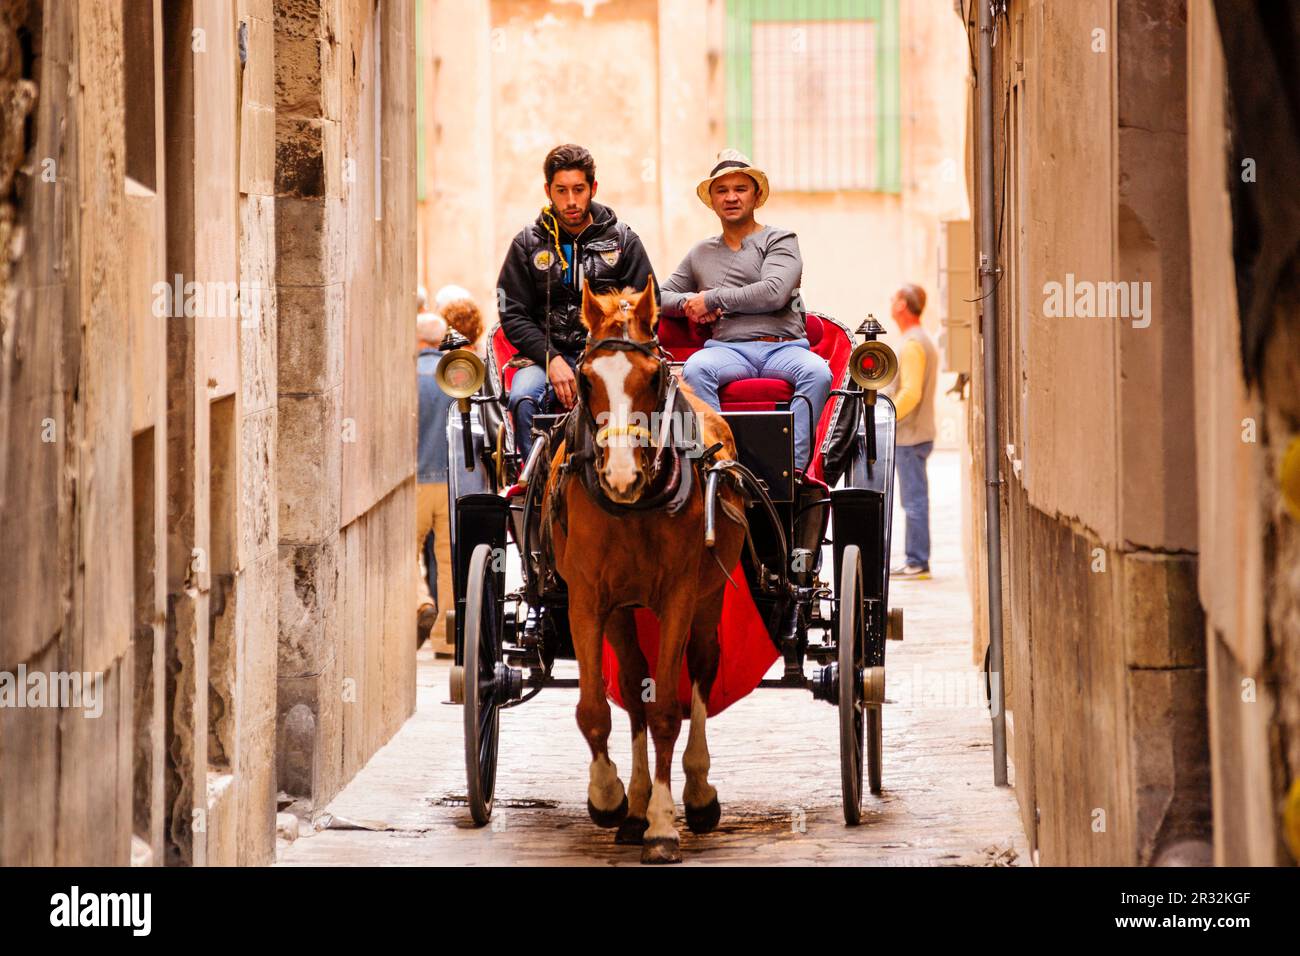 coche de caballos en un callejon,Palma, mallorca, islas baleares, Spain, europa. Stock Photo